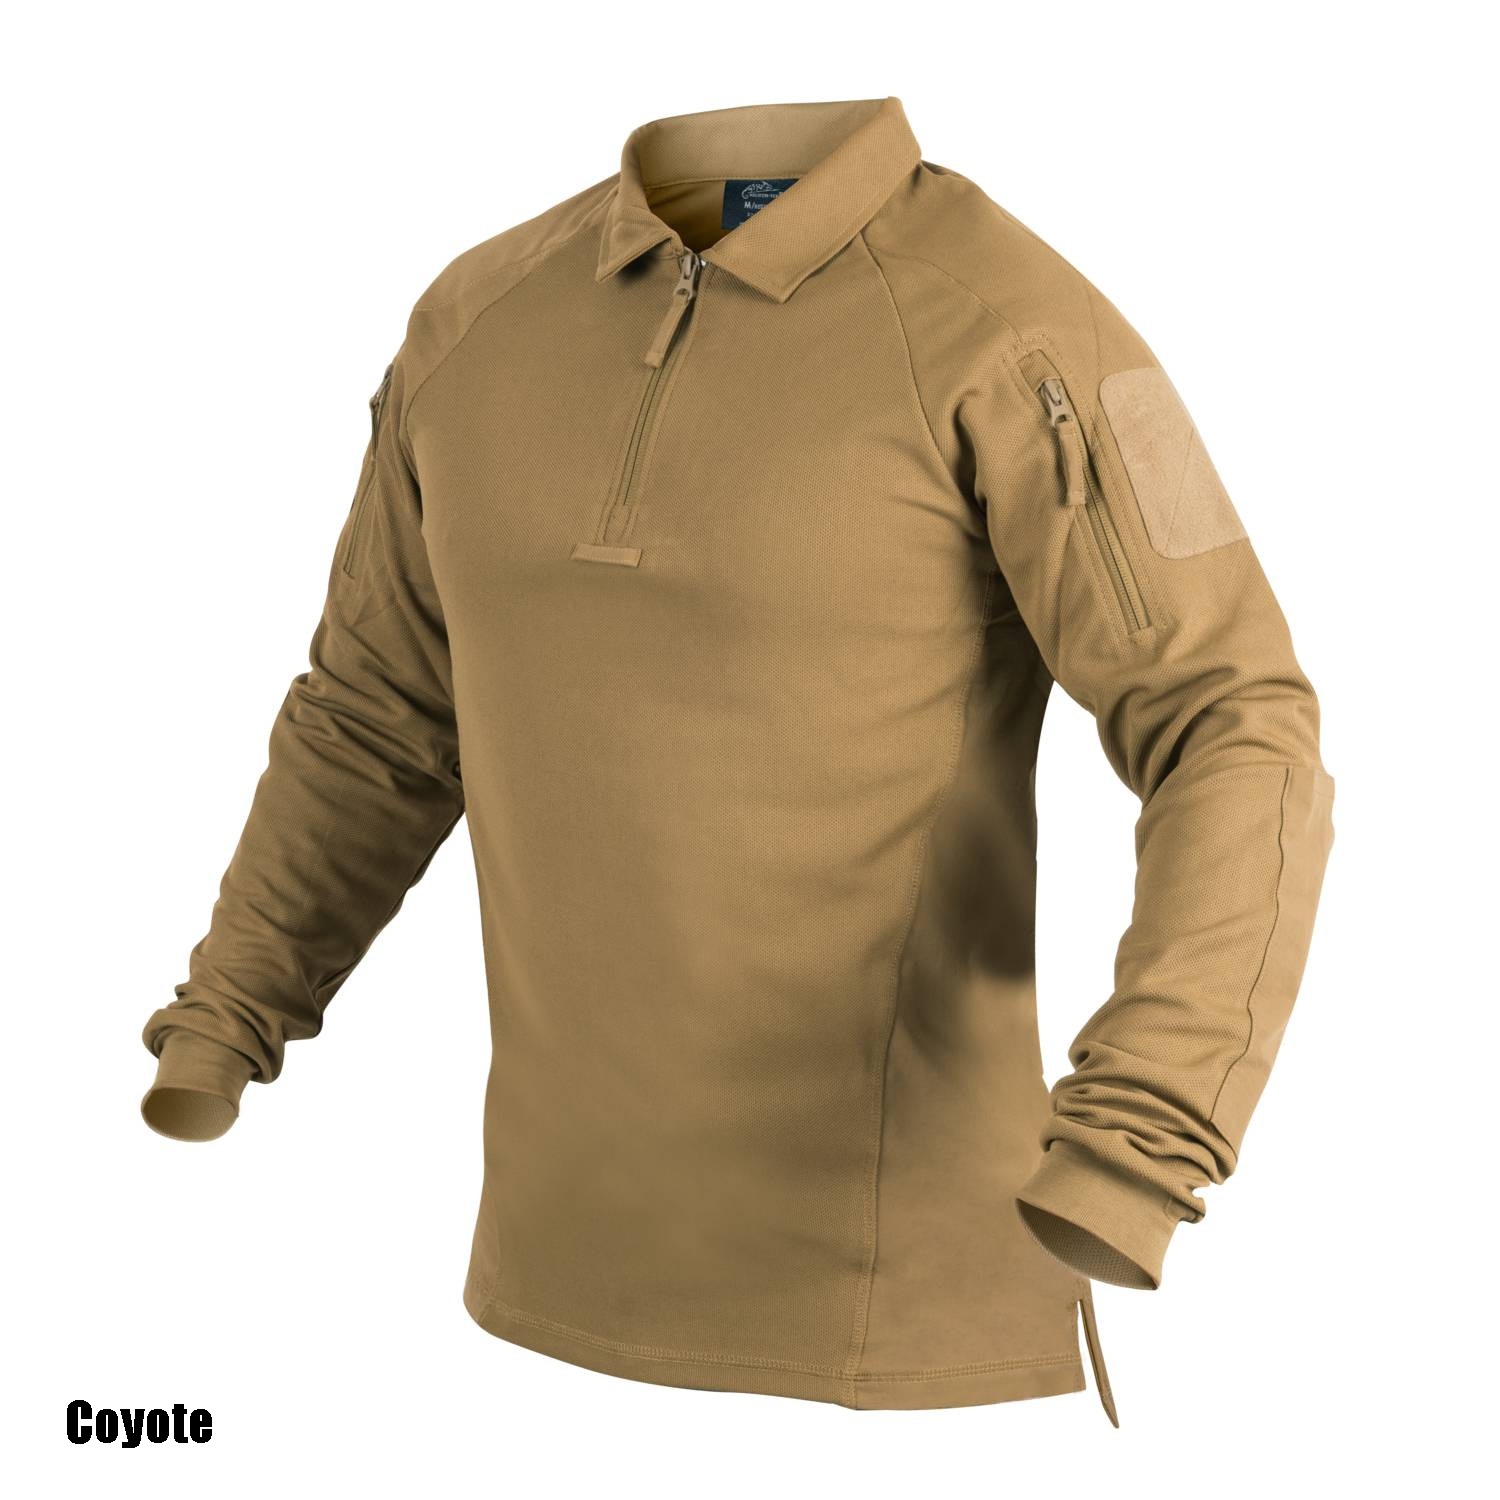 Range Polo Shirt – Helikon-Tex